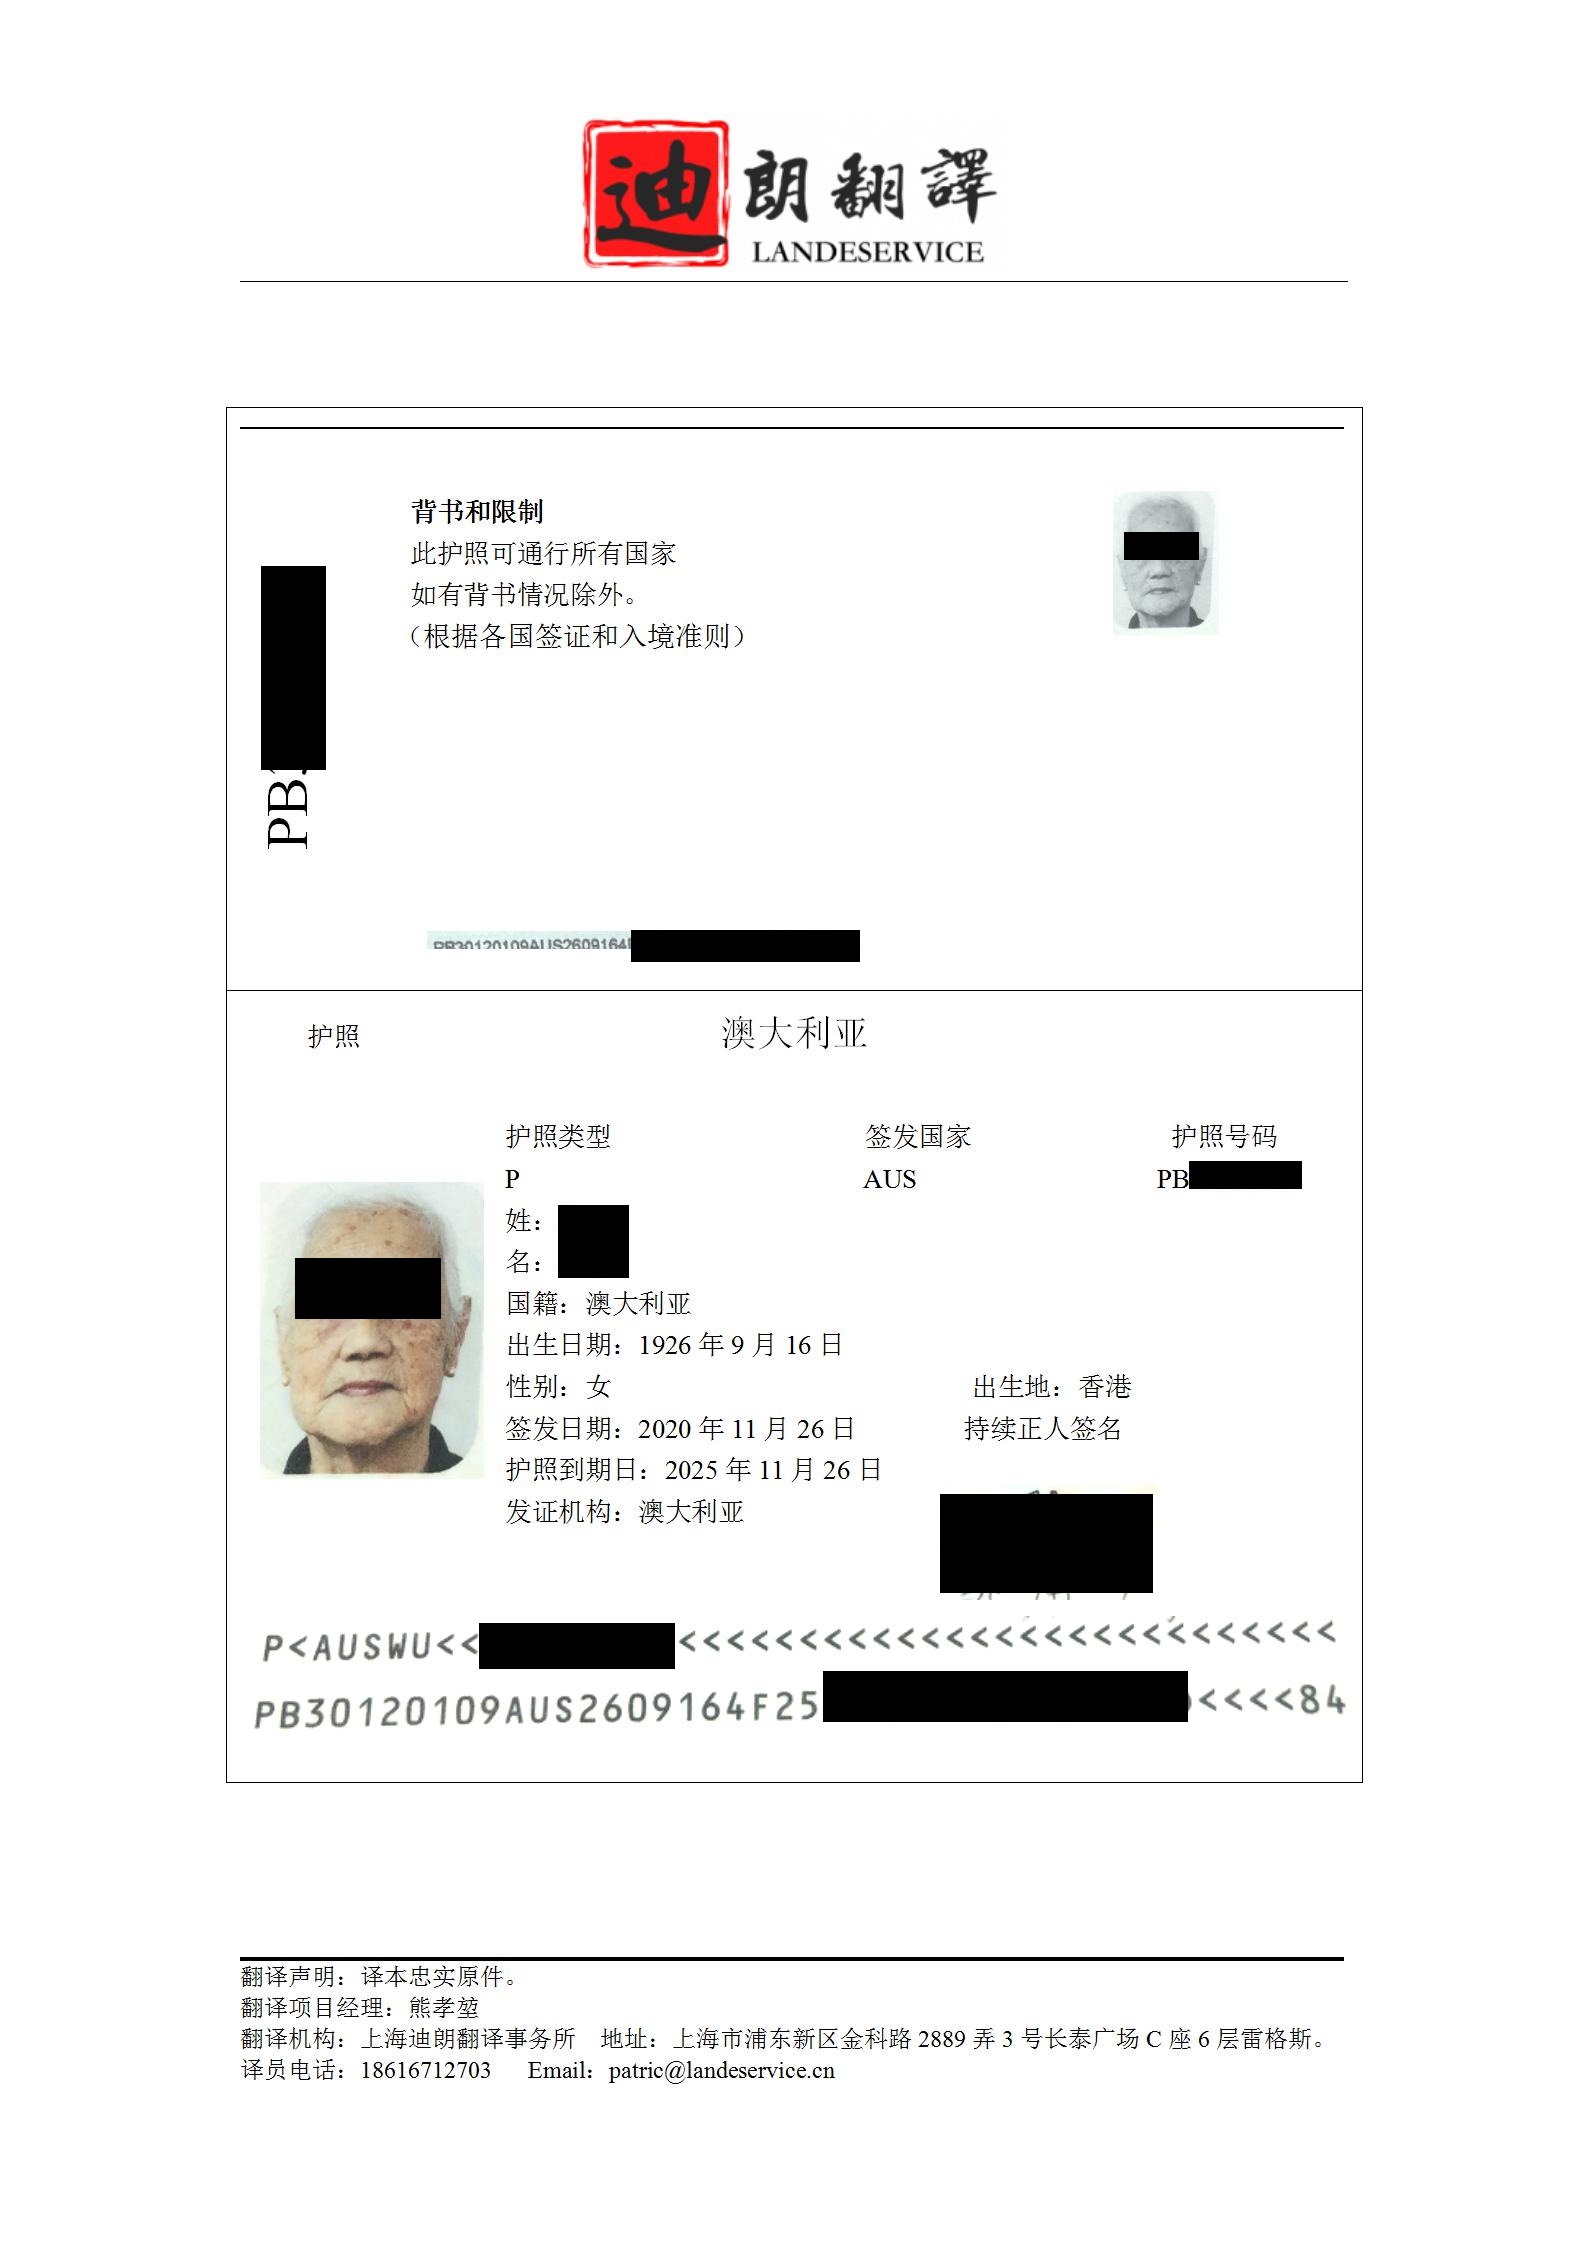 澳大利亚护照wenwen 01 - 香港籍澳大利亚护照翻译认证盖章